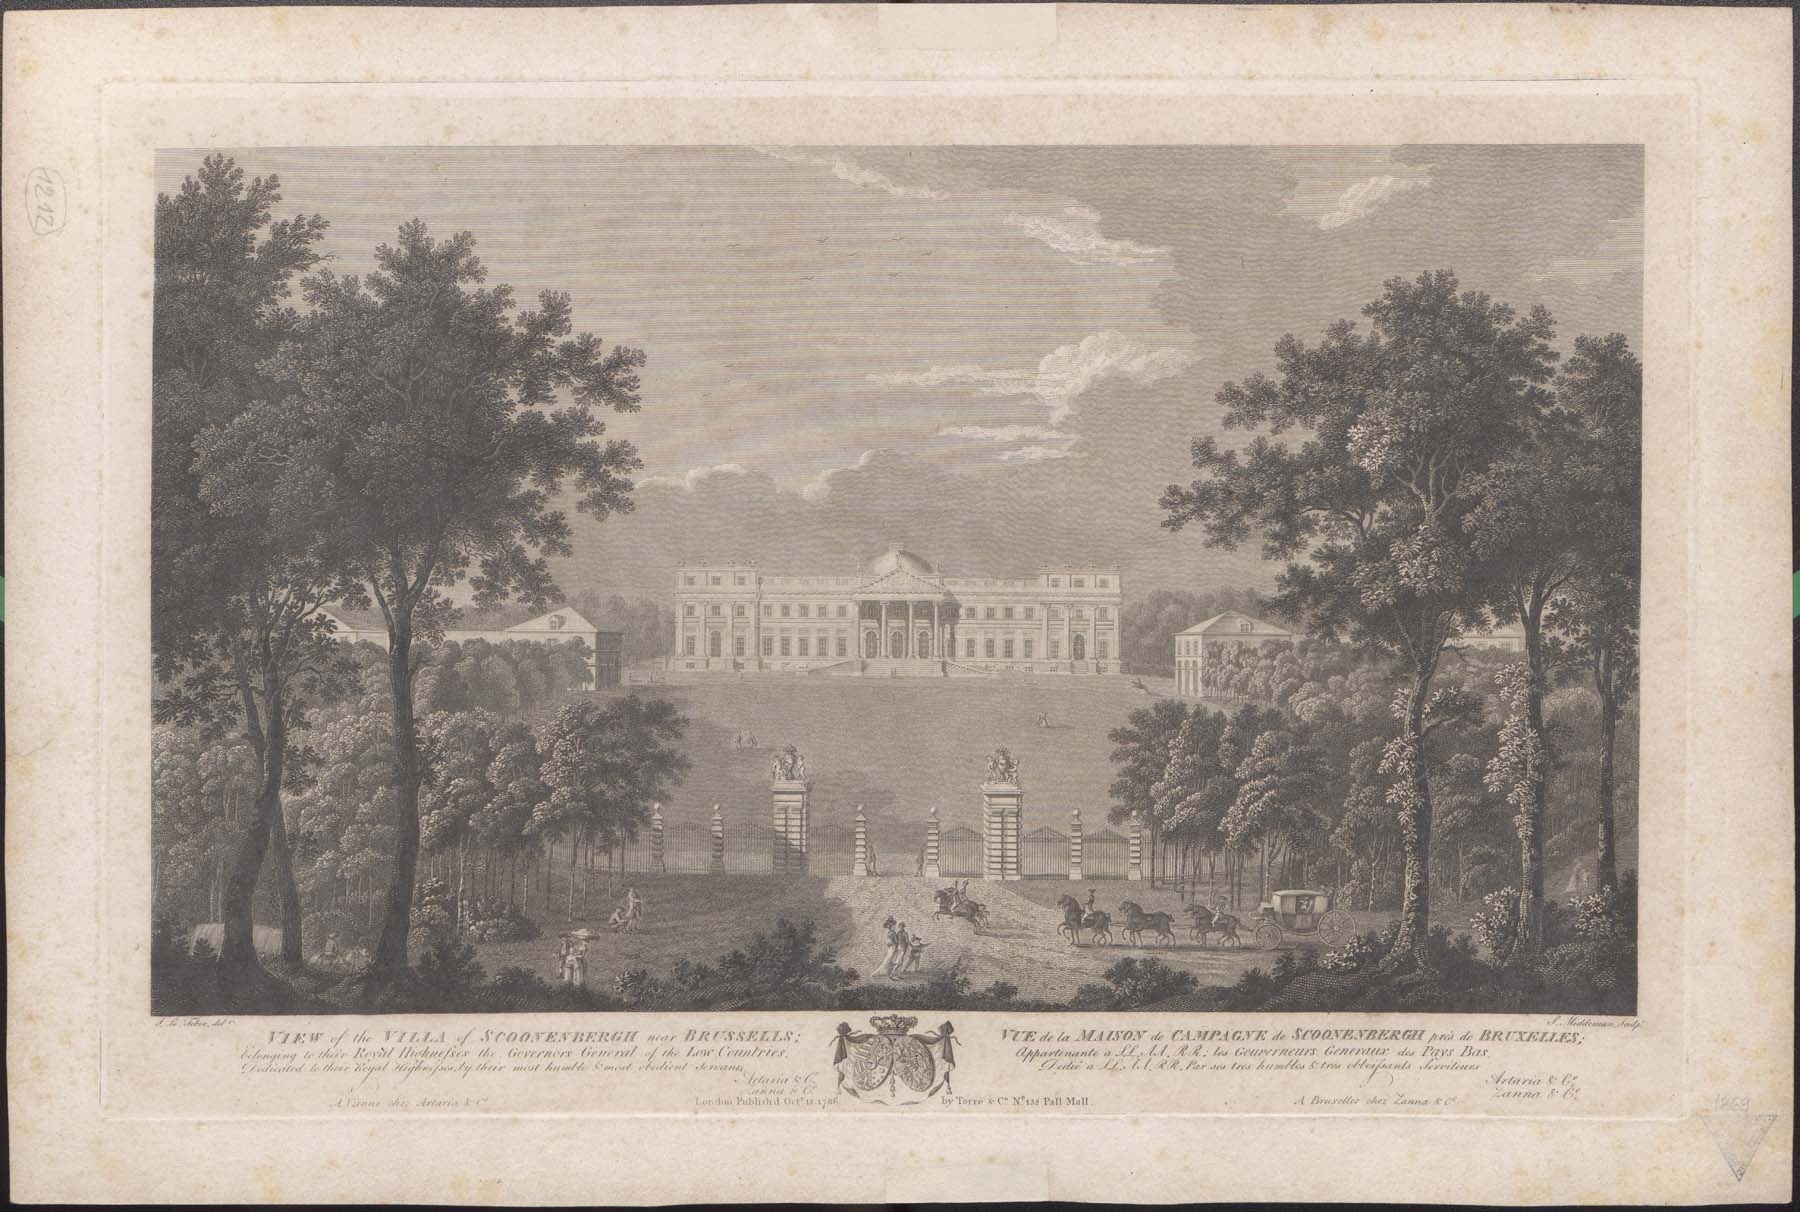 Scoonenbergh kastély, 1786 (Pannonhalma Főapátsági Múzeum CC BY-NC-SA)